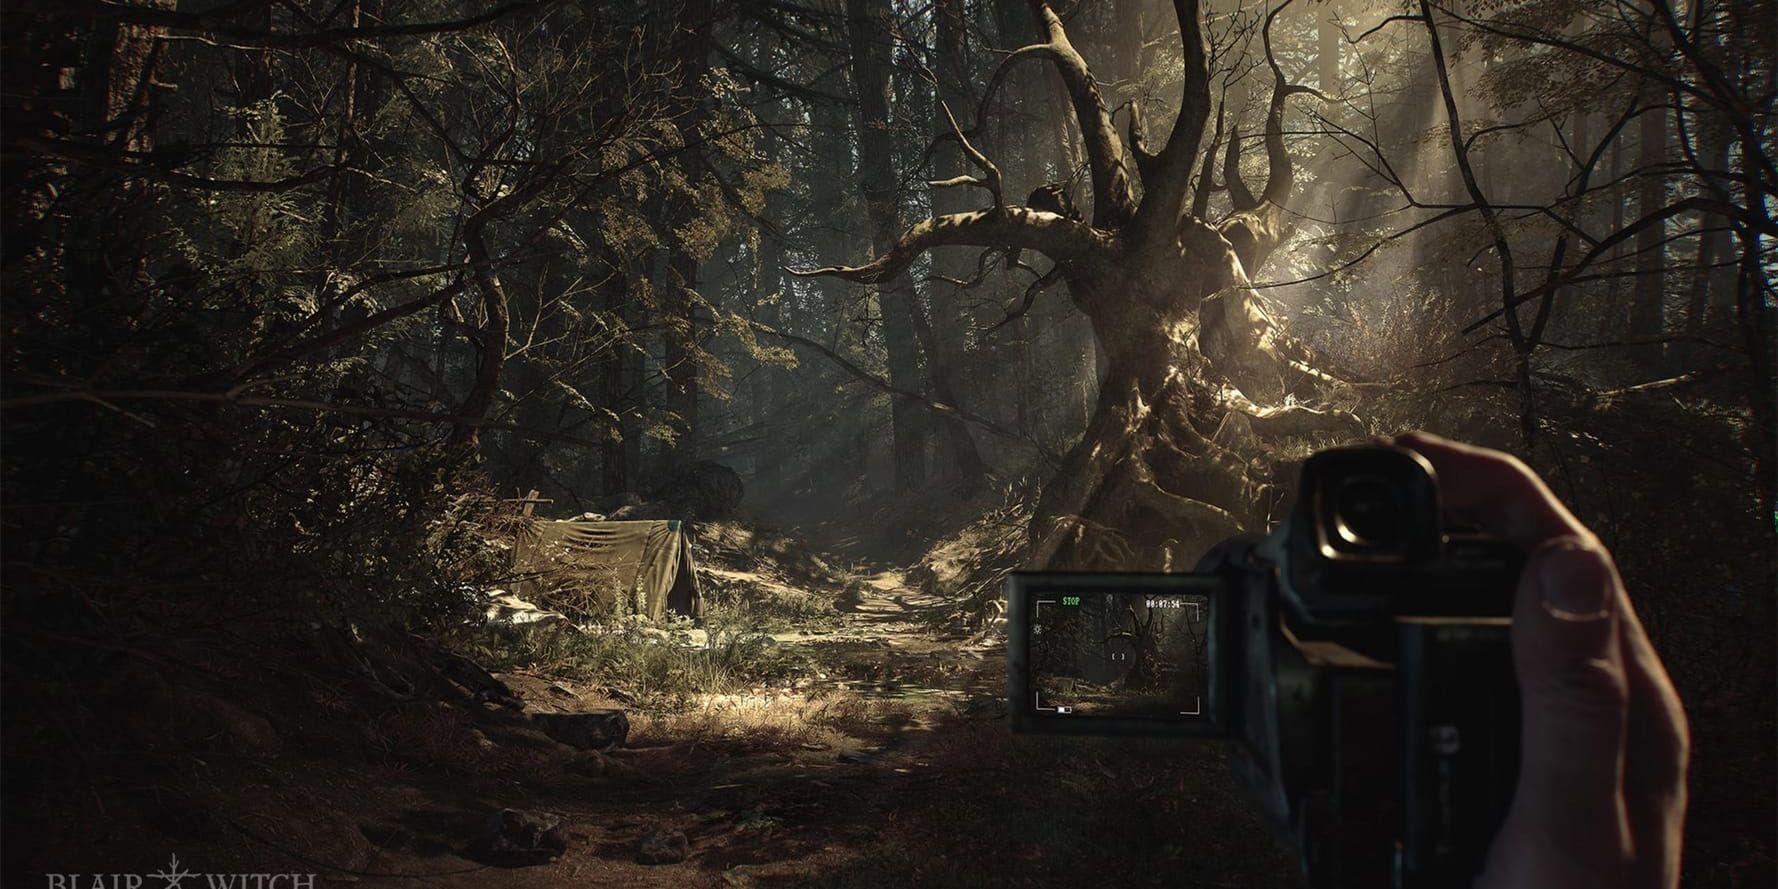 "Blair witch" ser ut att bli ett läskigt spel som utspelar sig i en skog. Pressbild.